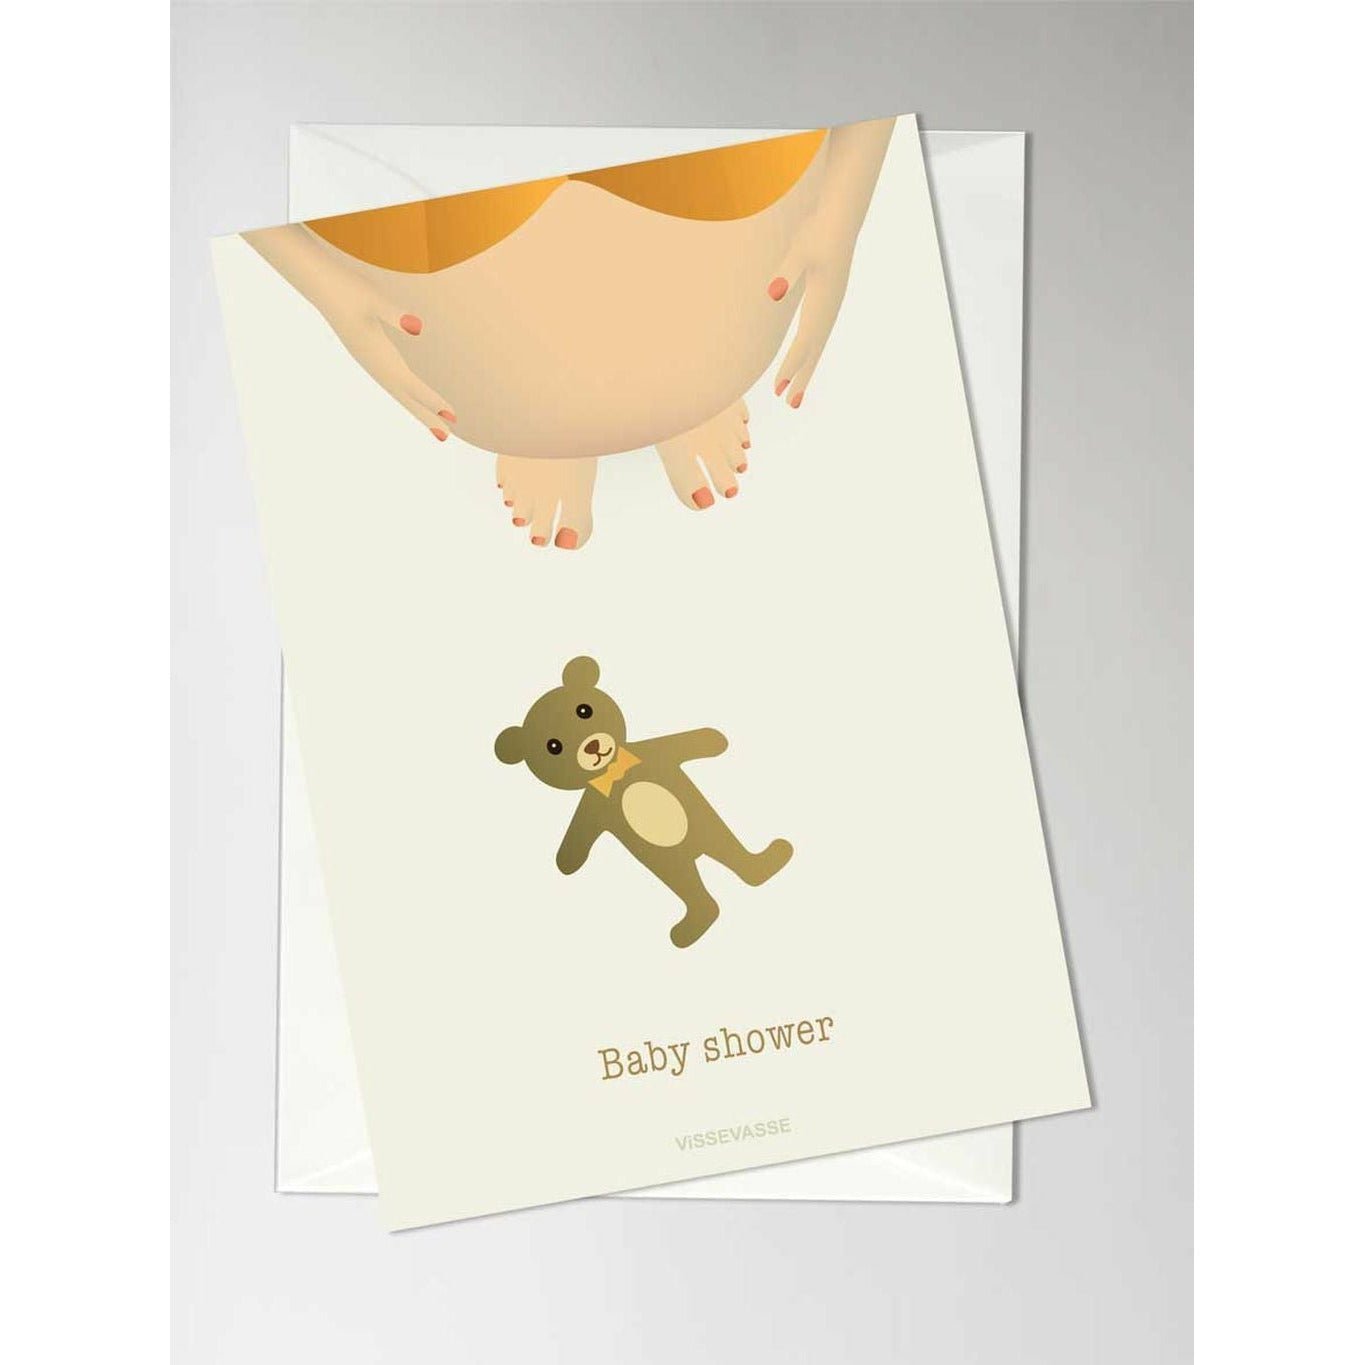 Vissevasse Baby Shower Carding Card